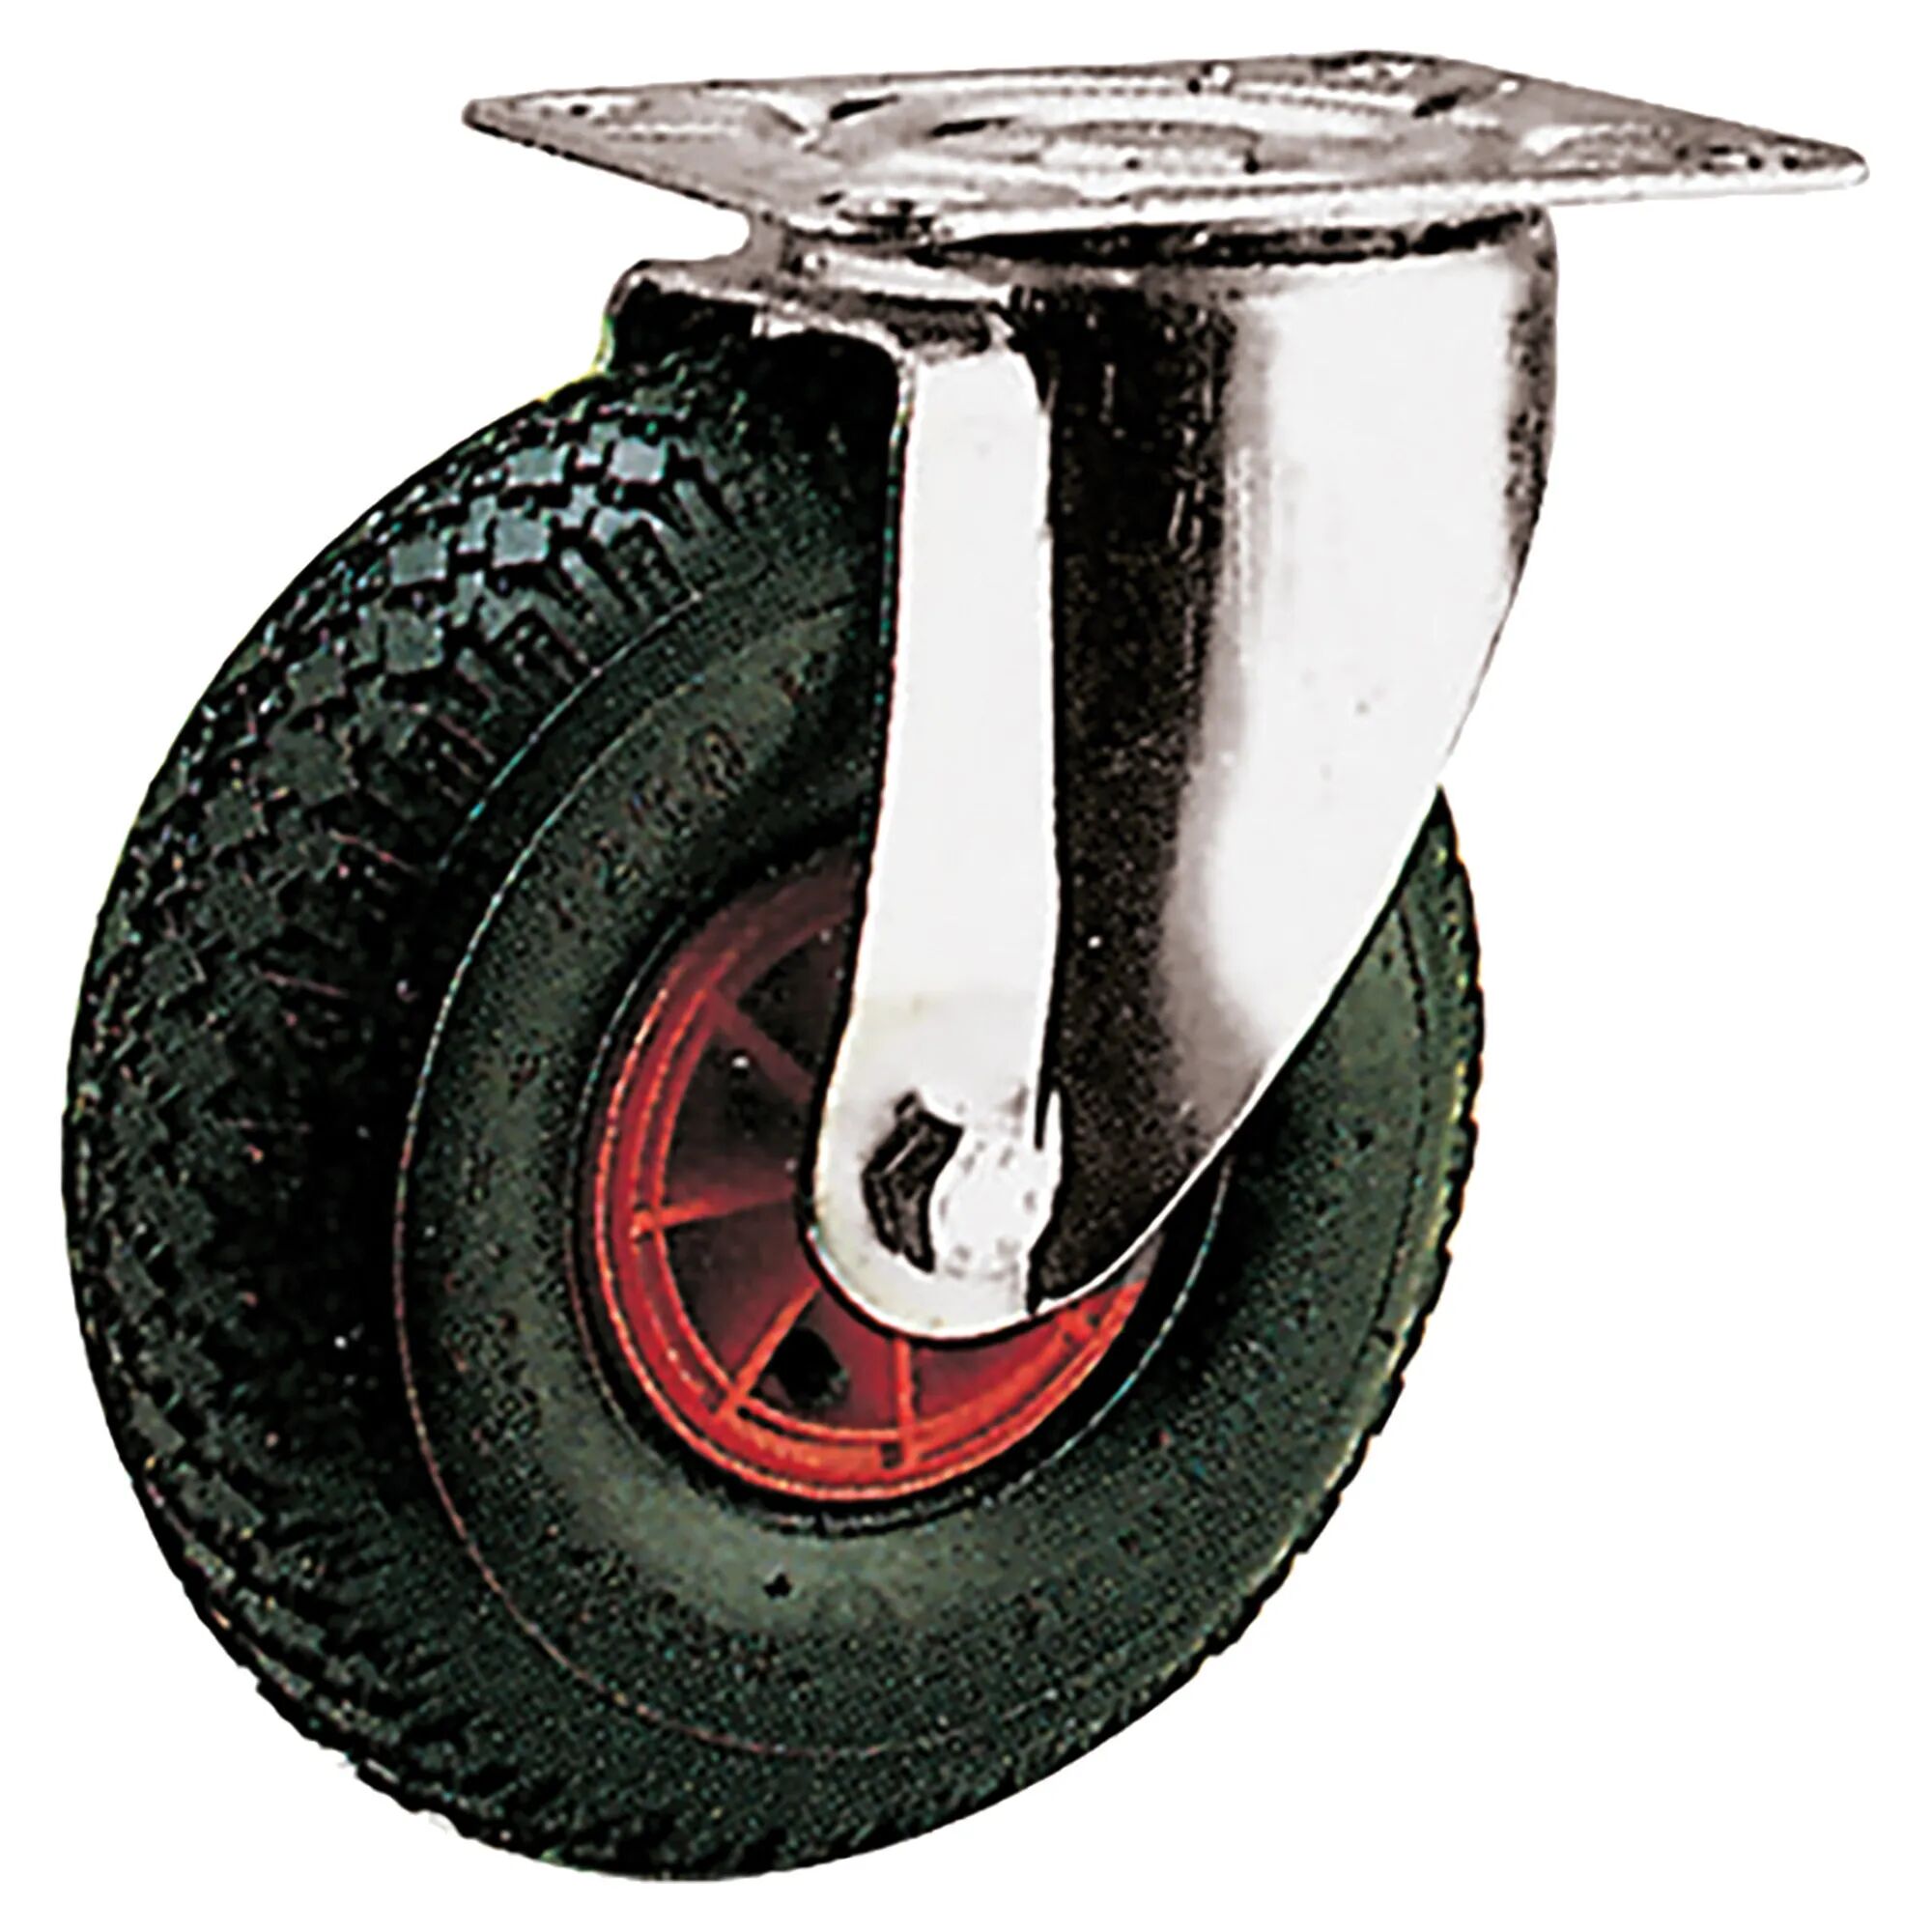 rocarr ruota pneumatica Ø 260 mm portata 180 kg gomma nera supporto a piastra girevole